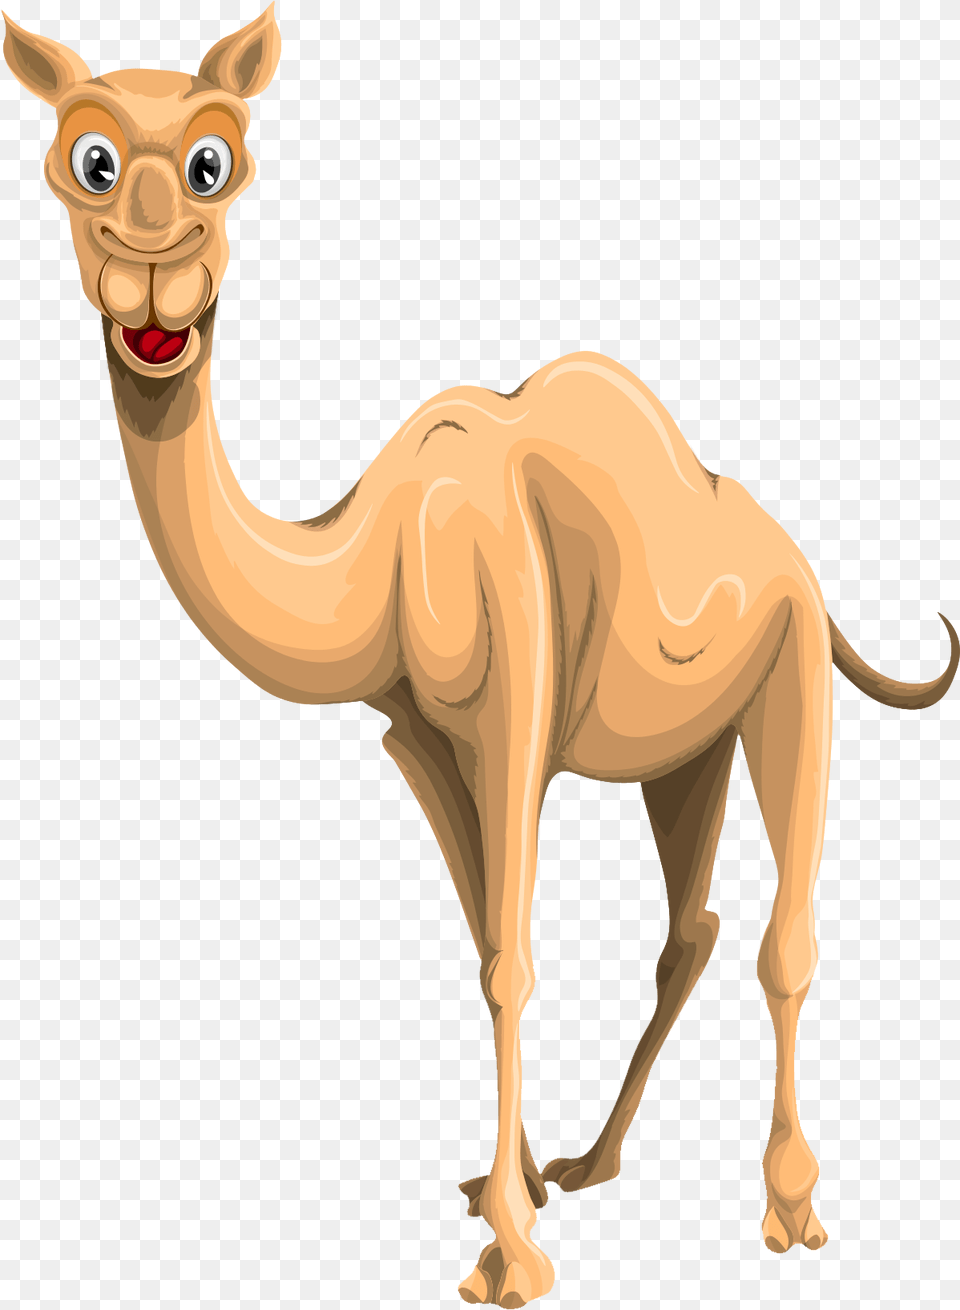 Camel, Animal, Mammal, Kangaroo Free Png